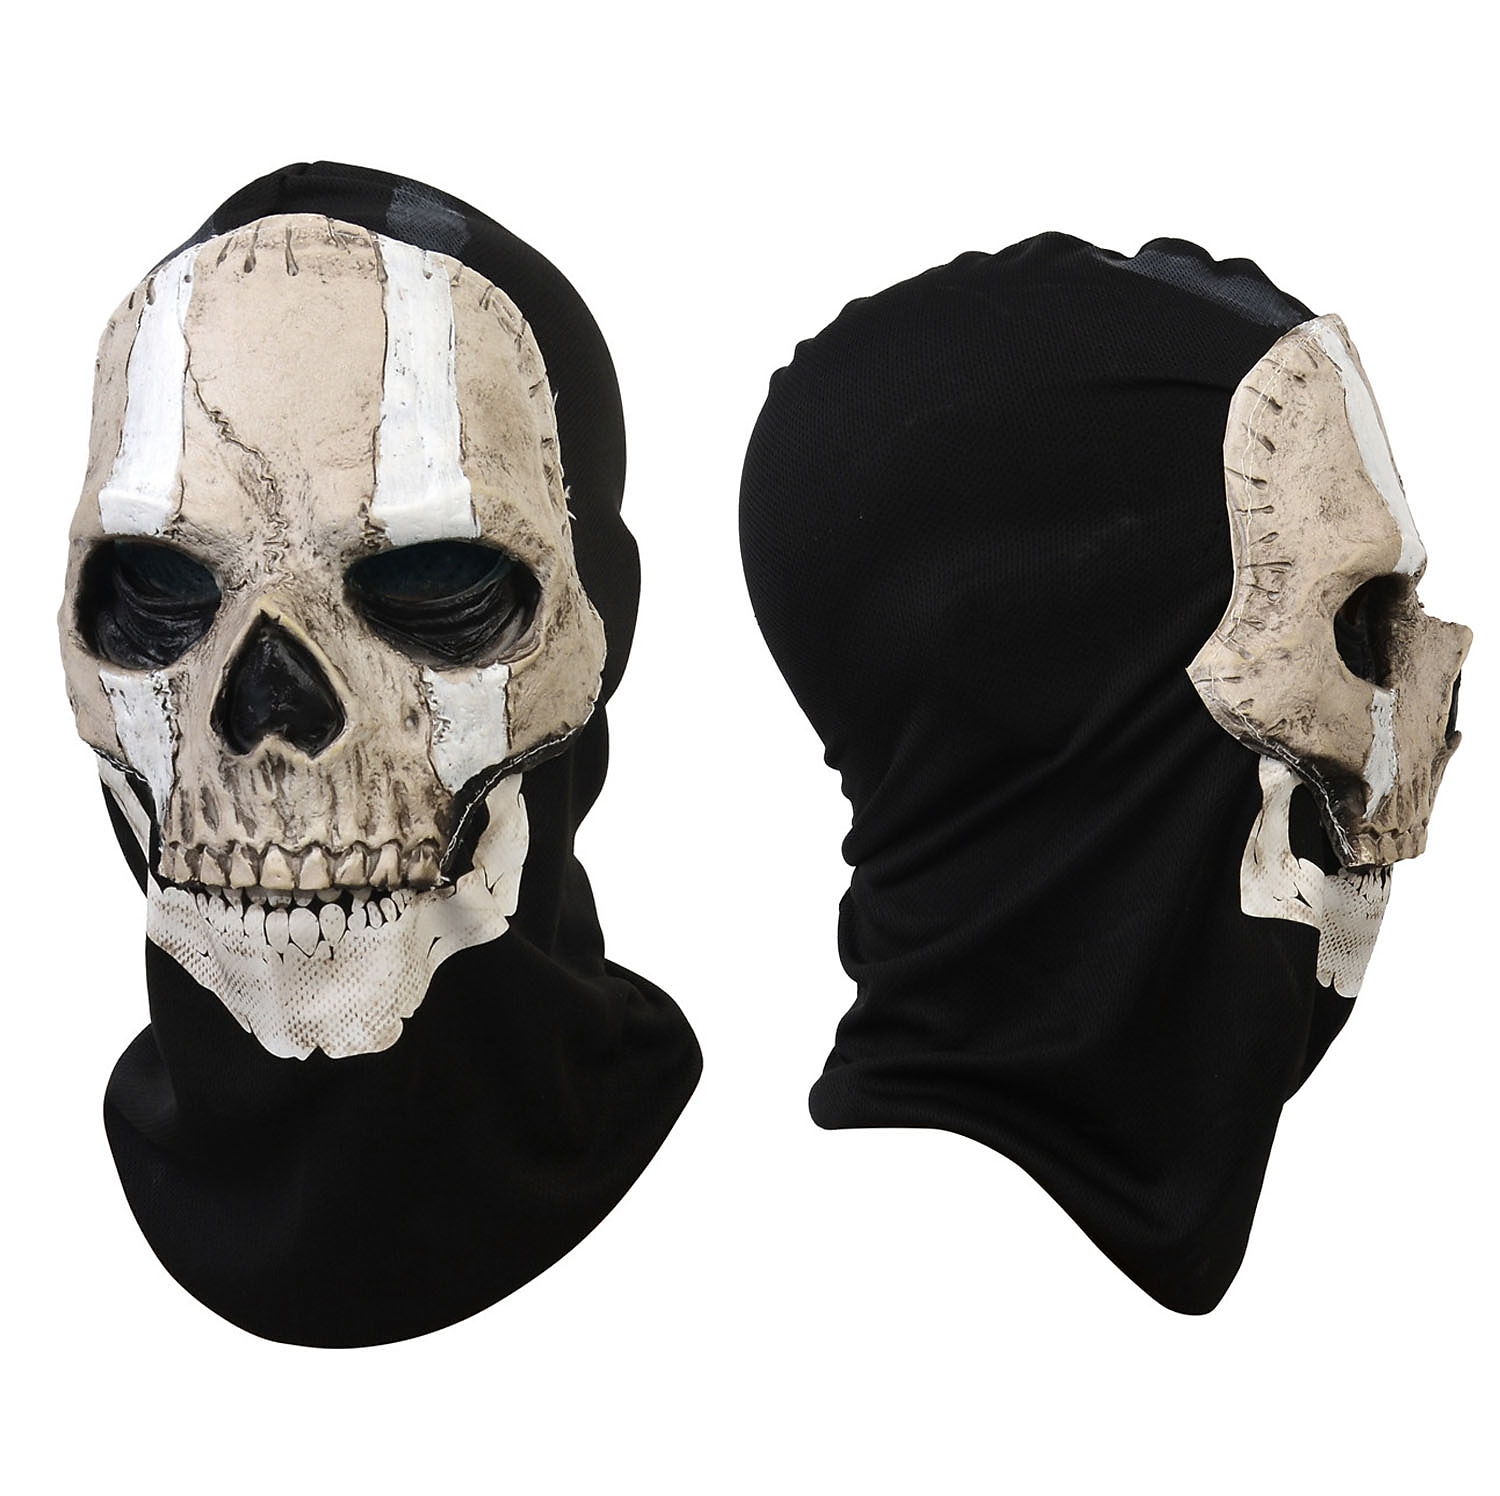  UGLYAF Call of Duty Warzone 2 Skeleton mask, Halloween